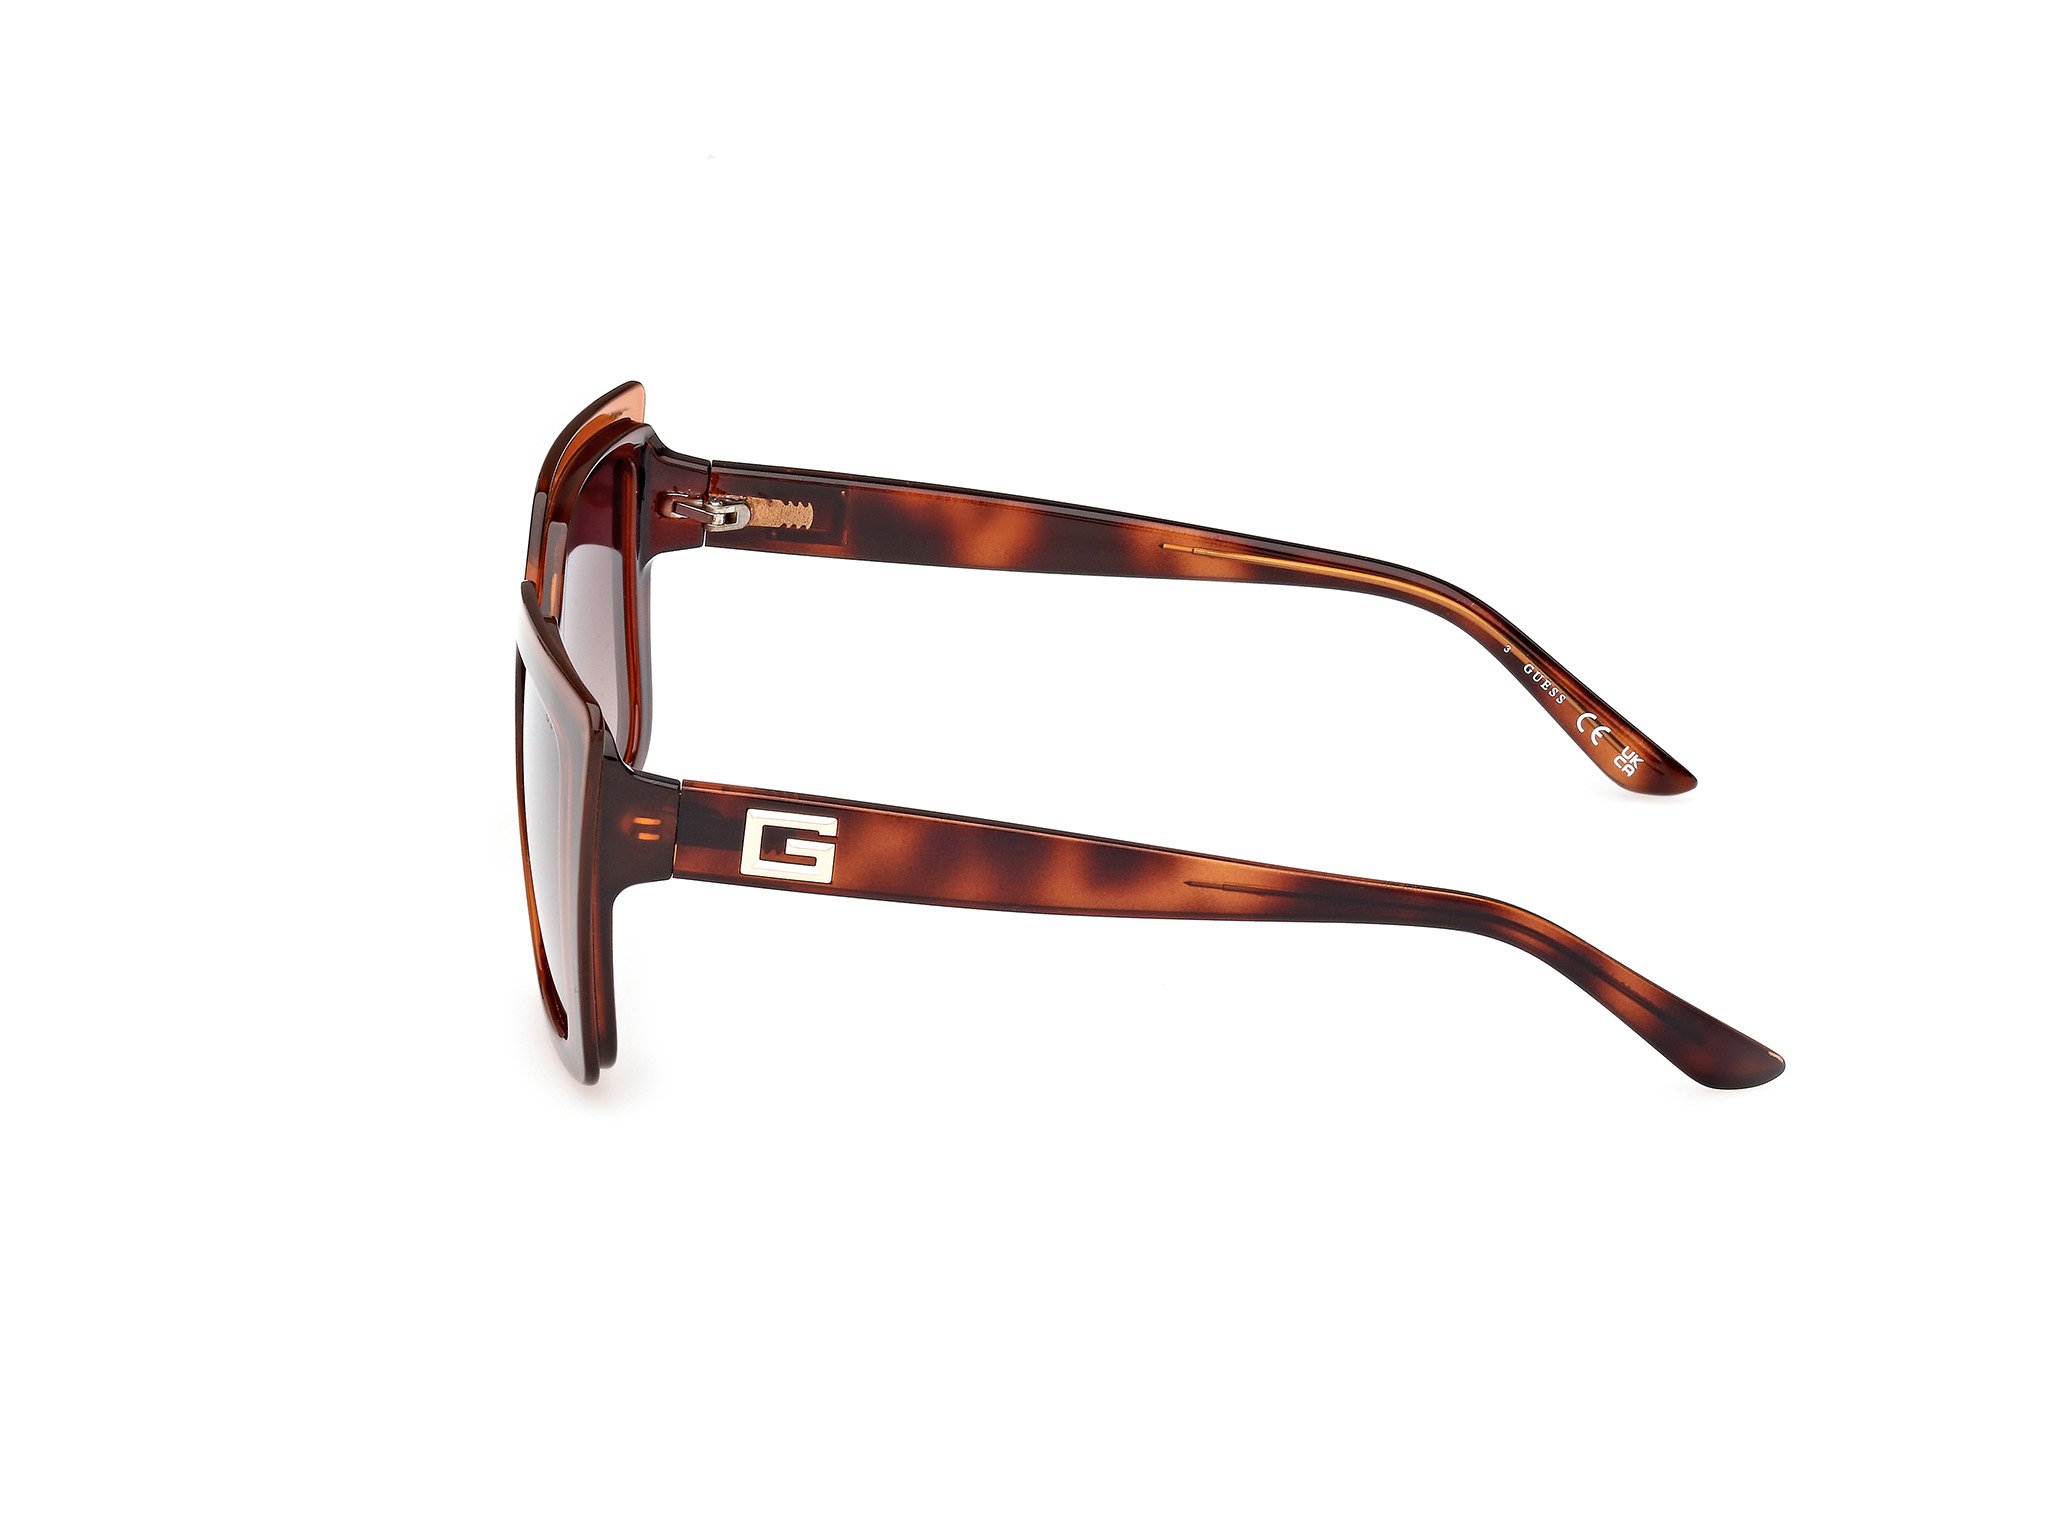 Das Bild zeigt die Sonnenbrille GU7908 52F von der Marke Guess in braun gemustert.